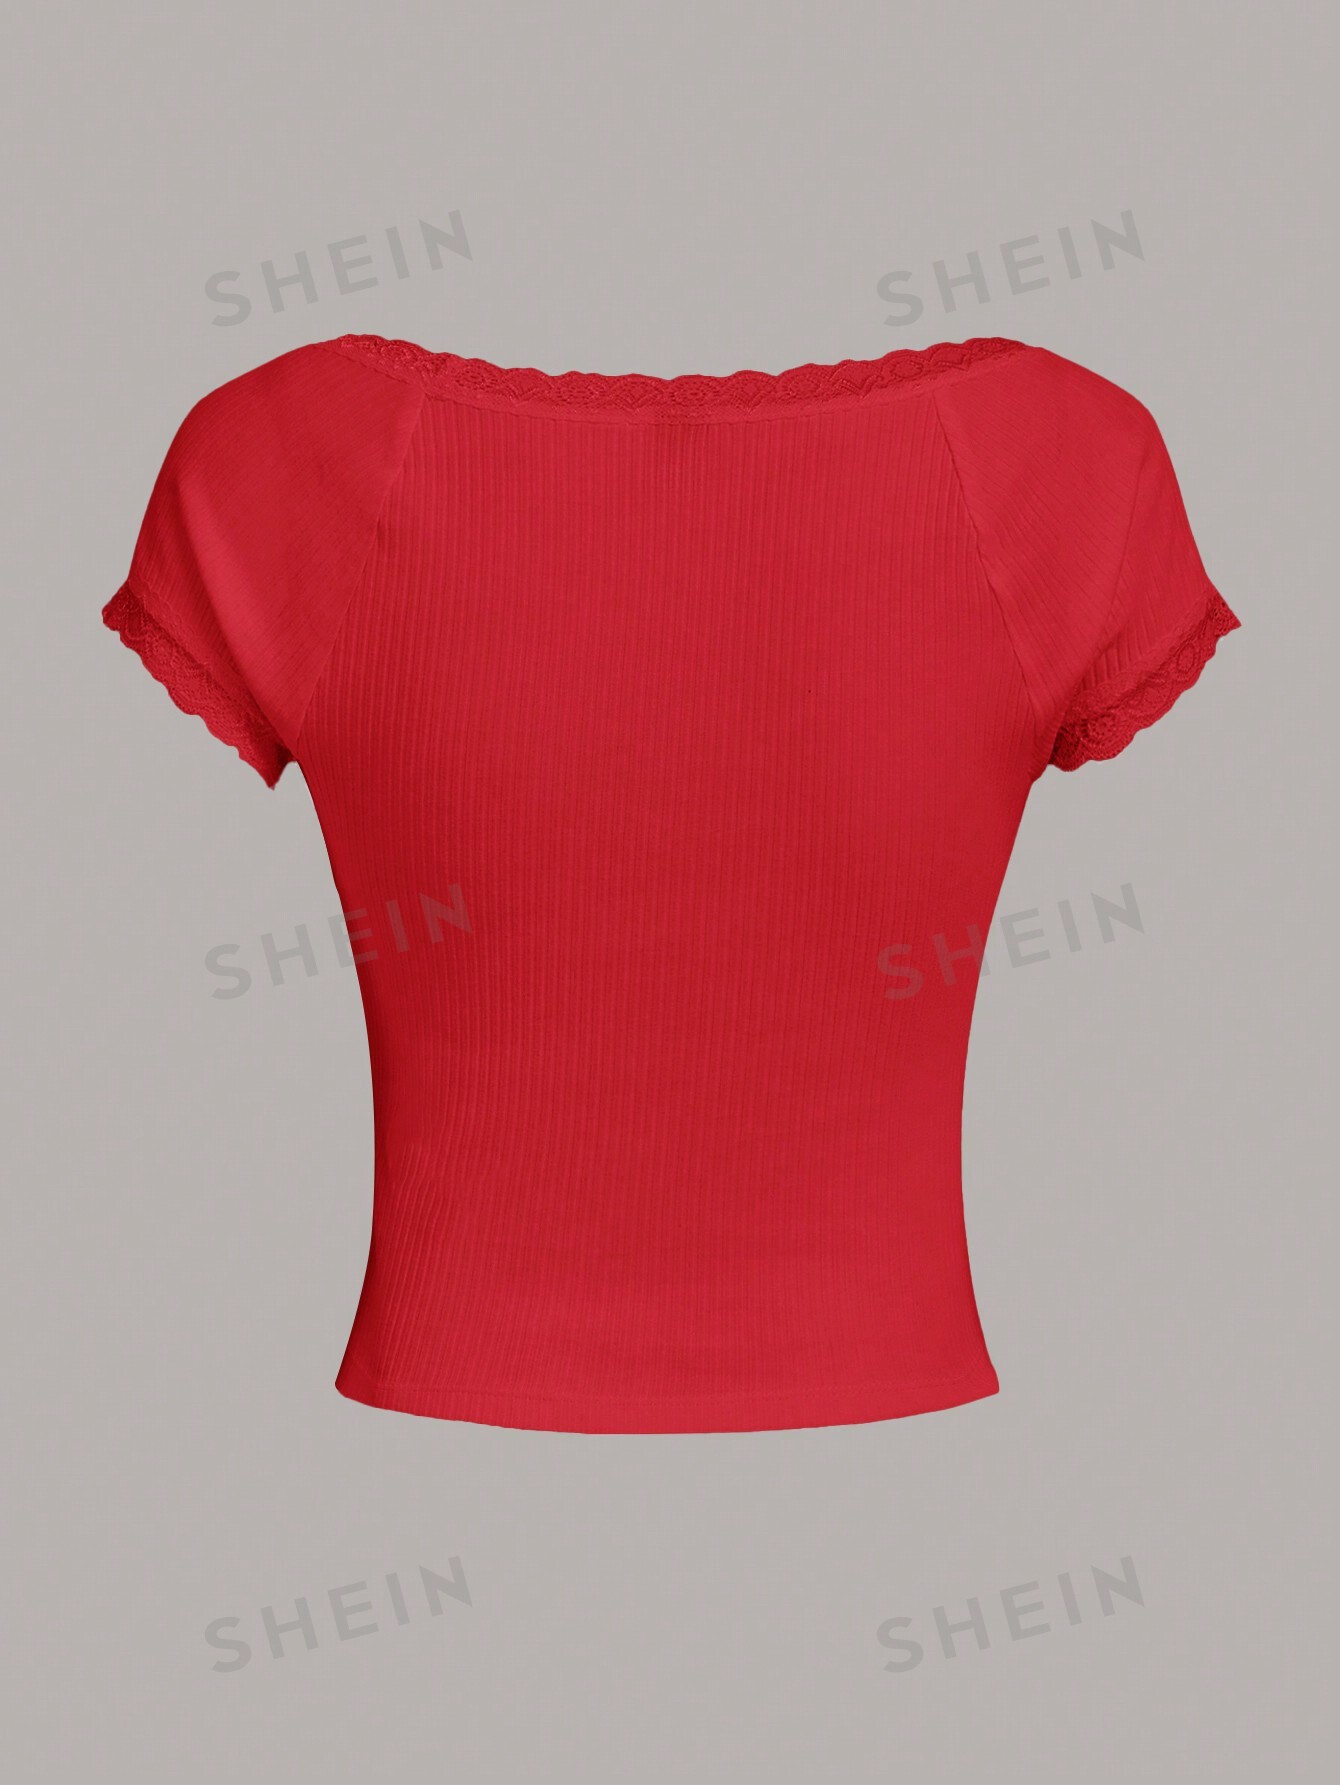 SHEIN Qutie Женская трикотажная футболка с короткими рукавами и кружевным краем, красный